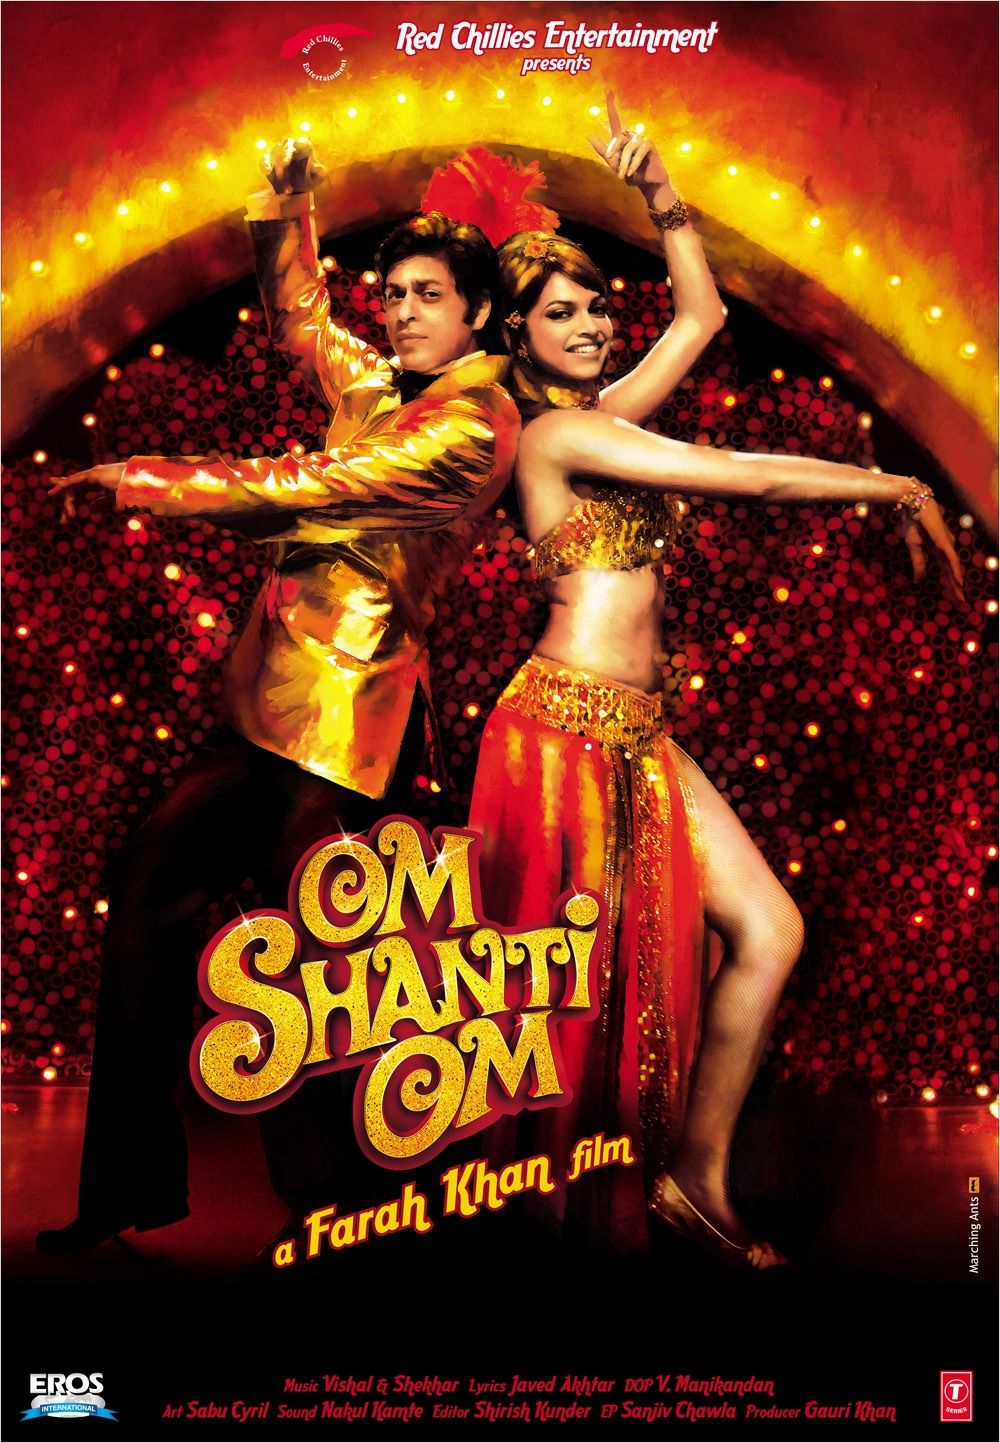 Film poster for "Om Shanti Om" (2007)